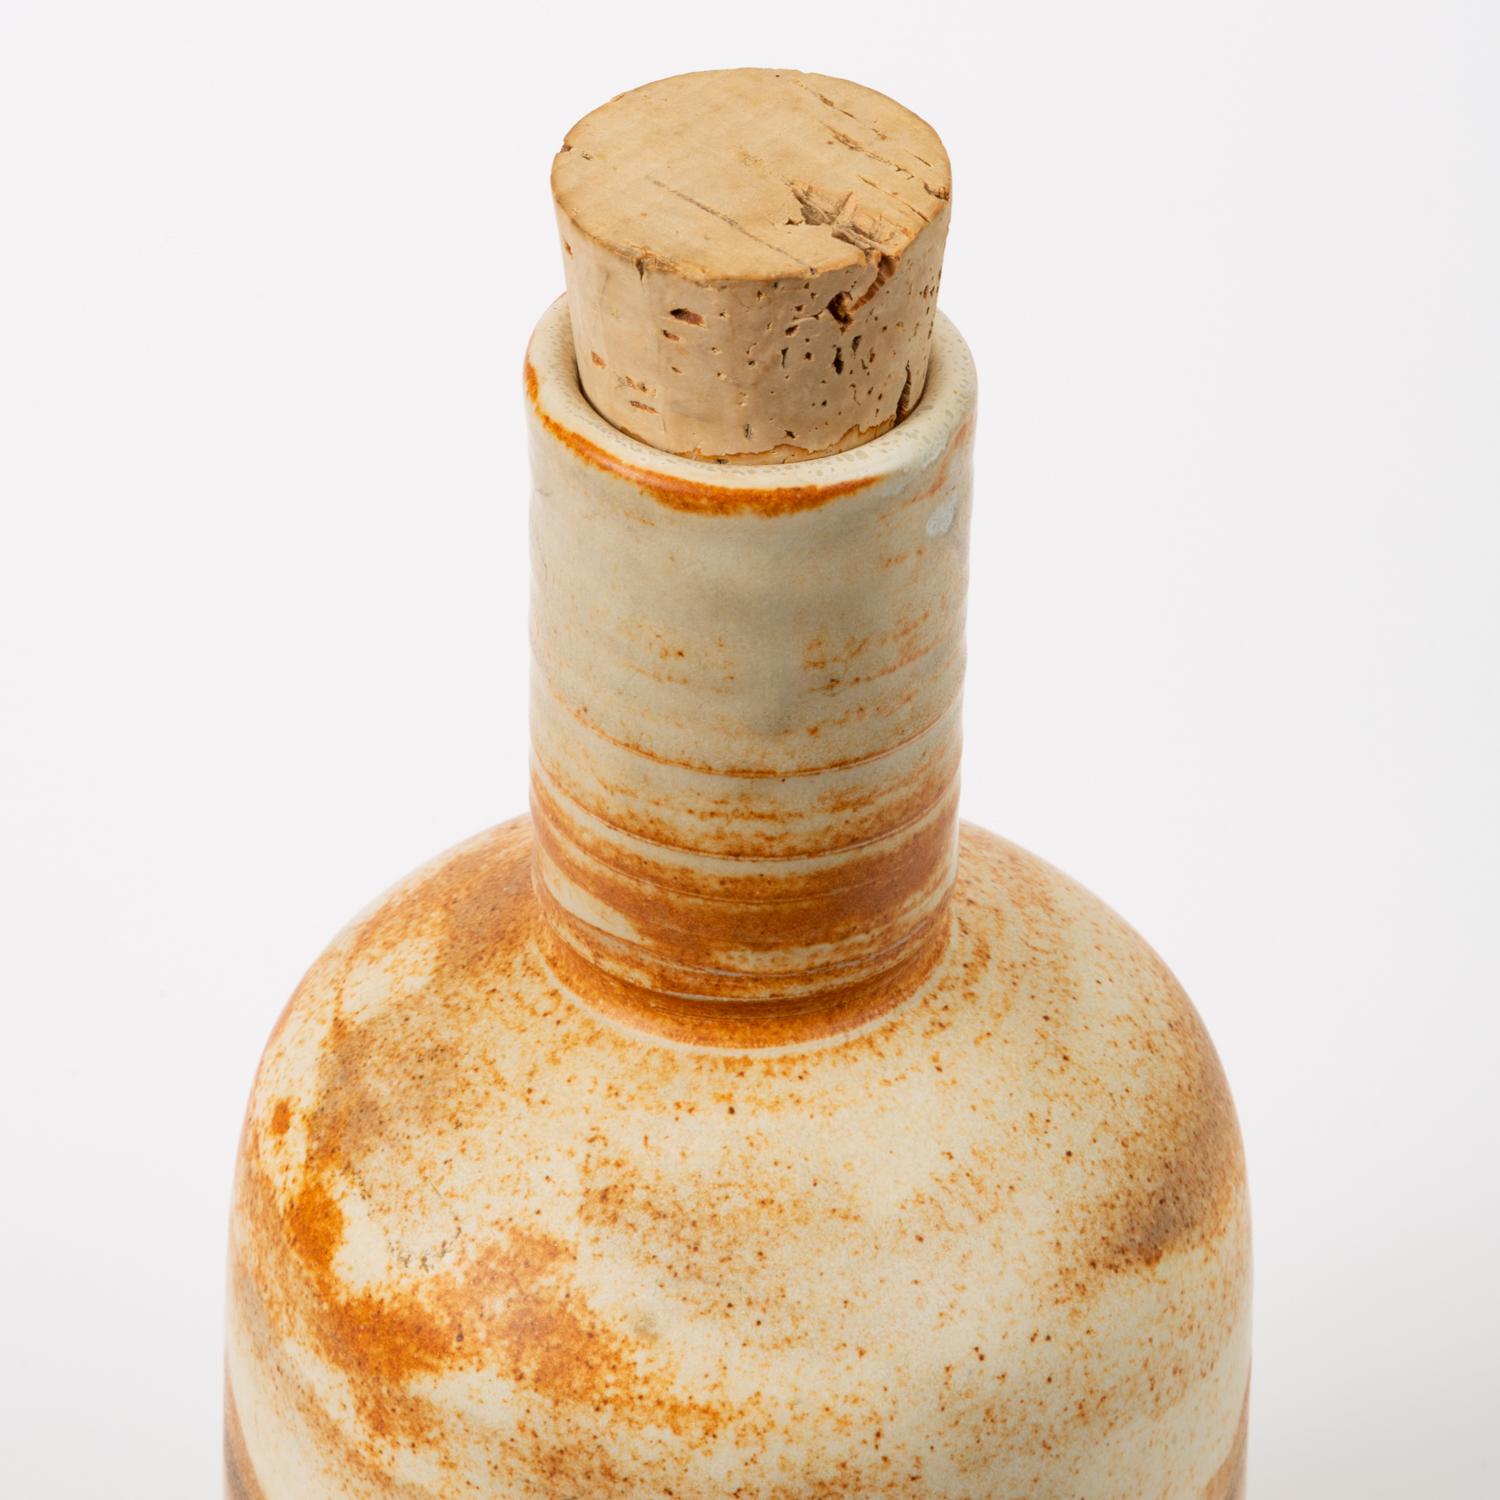 Ceramic California Studio Pottery Bottle with Cork Stopper 'JB'